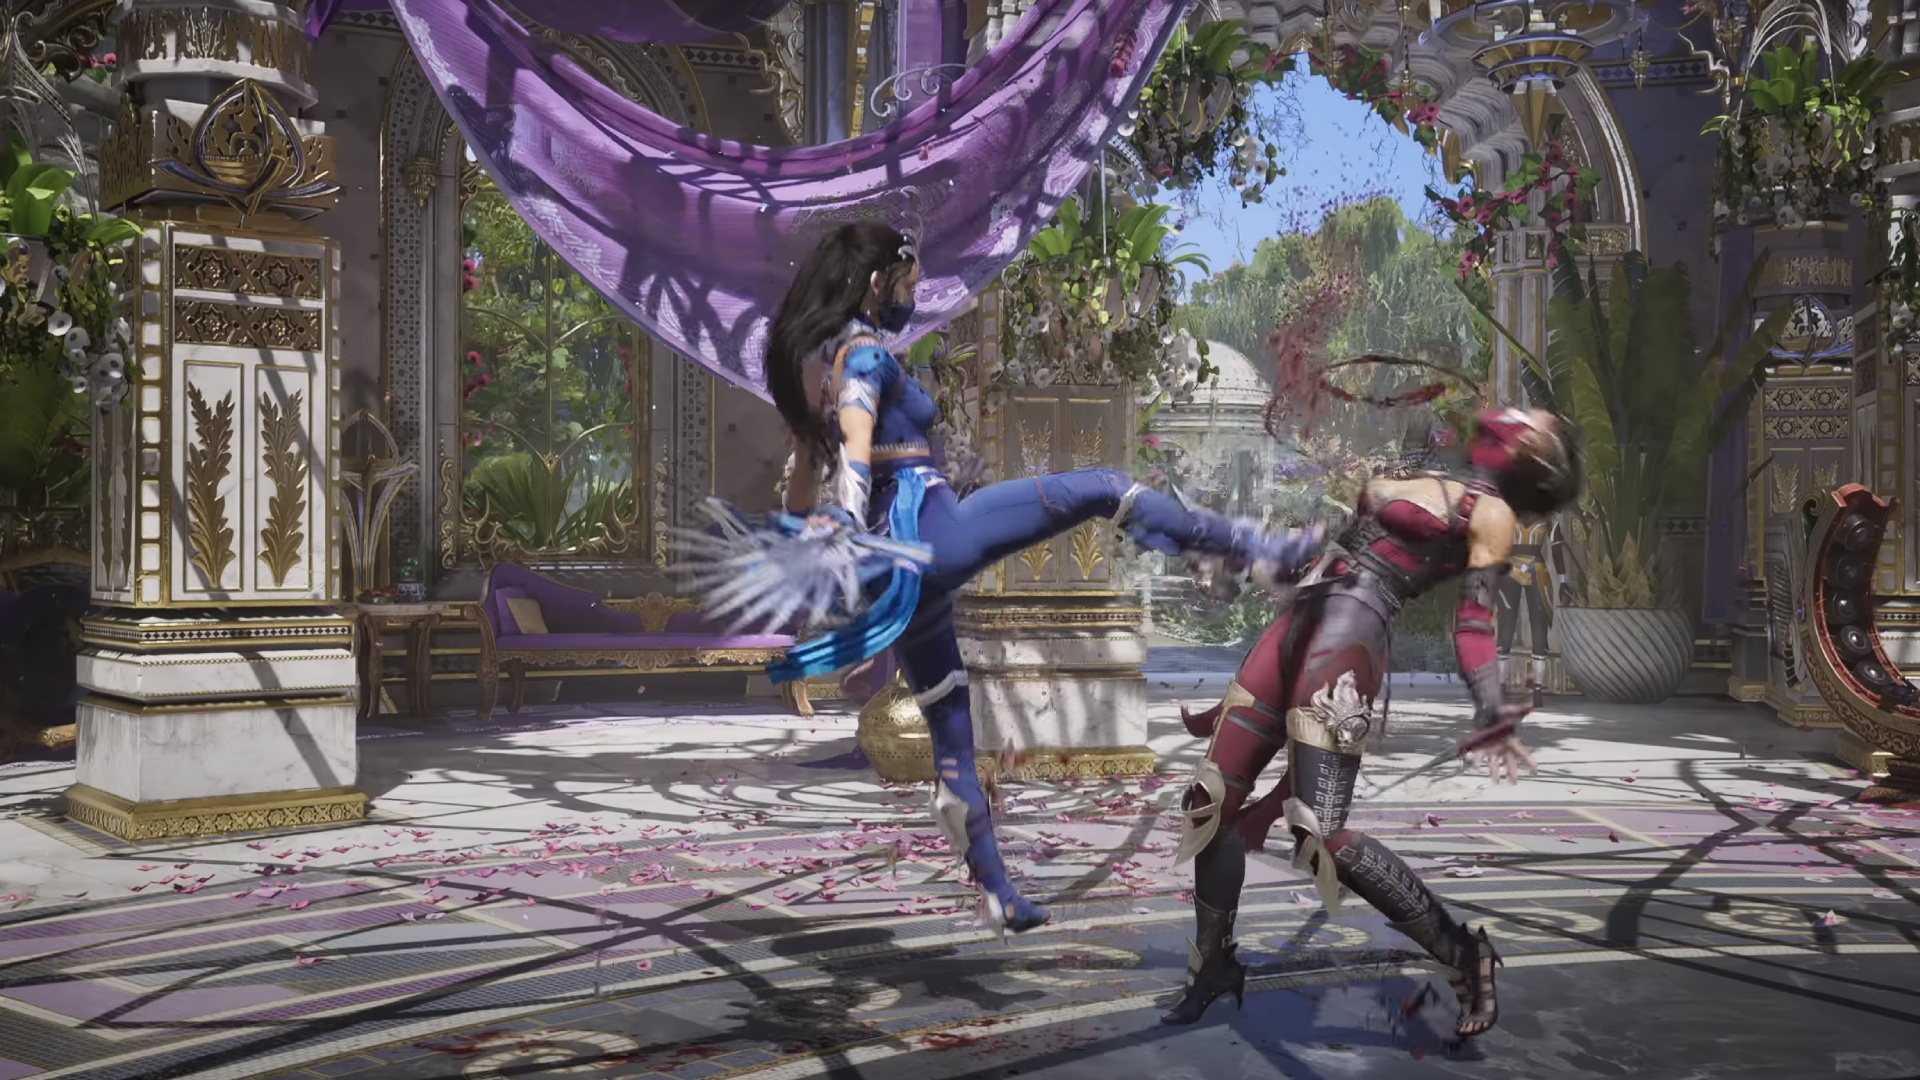 Mortal Kombat 1 characters: Kitana kicking an enemy.